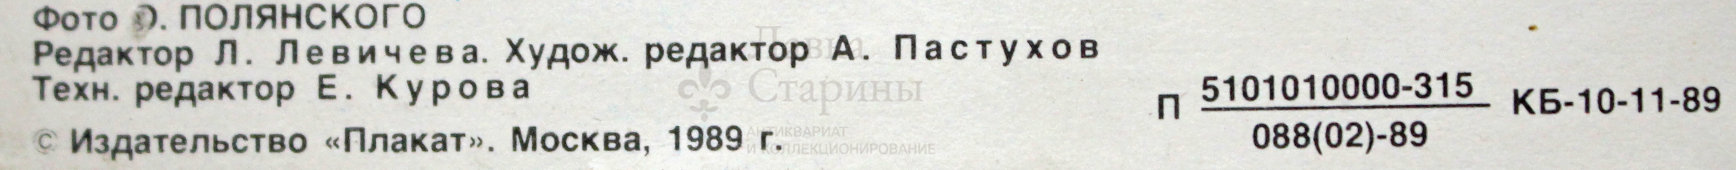 Советский агитационный плакат с фотографией зебры «Охране природы - народную заботу!», фотограф О. Полянский, 1989 г.